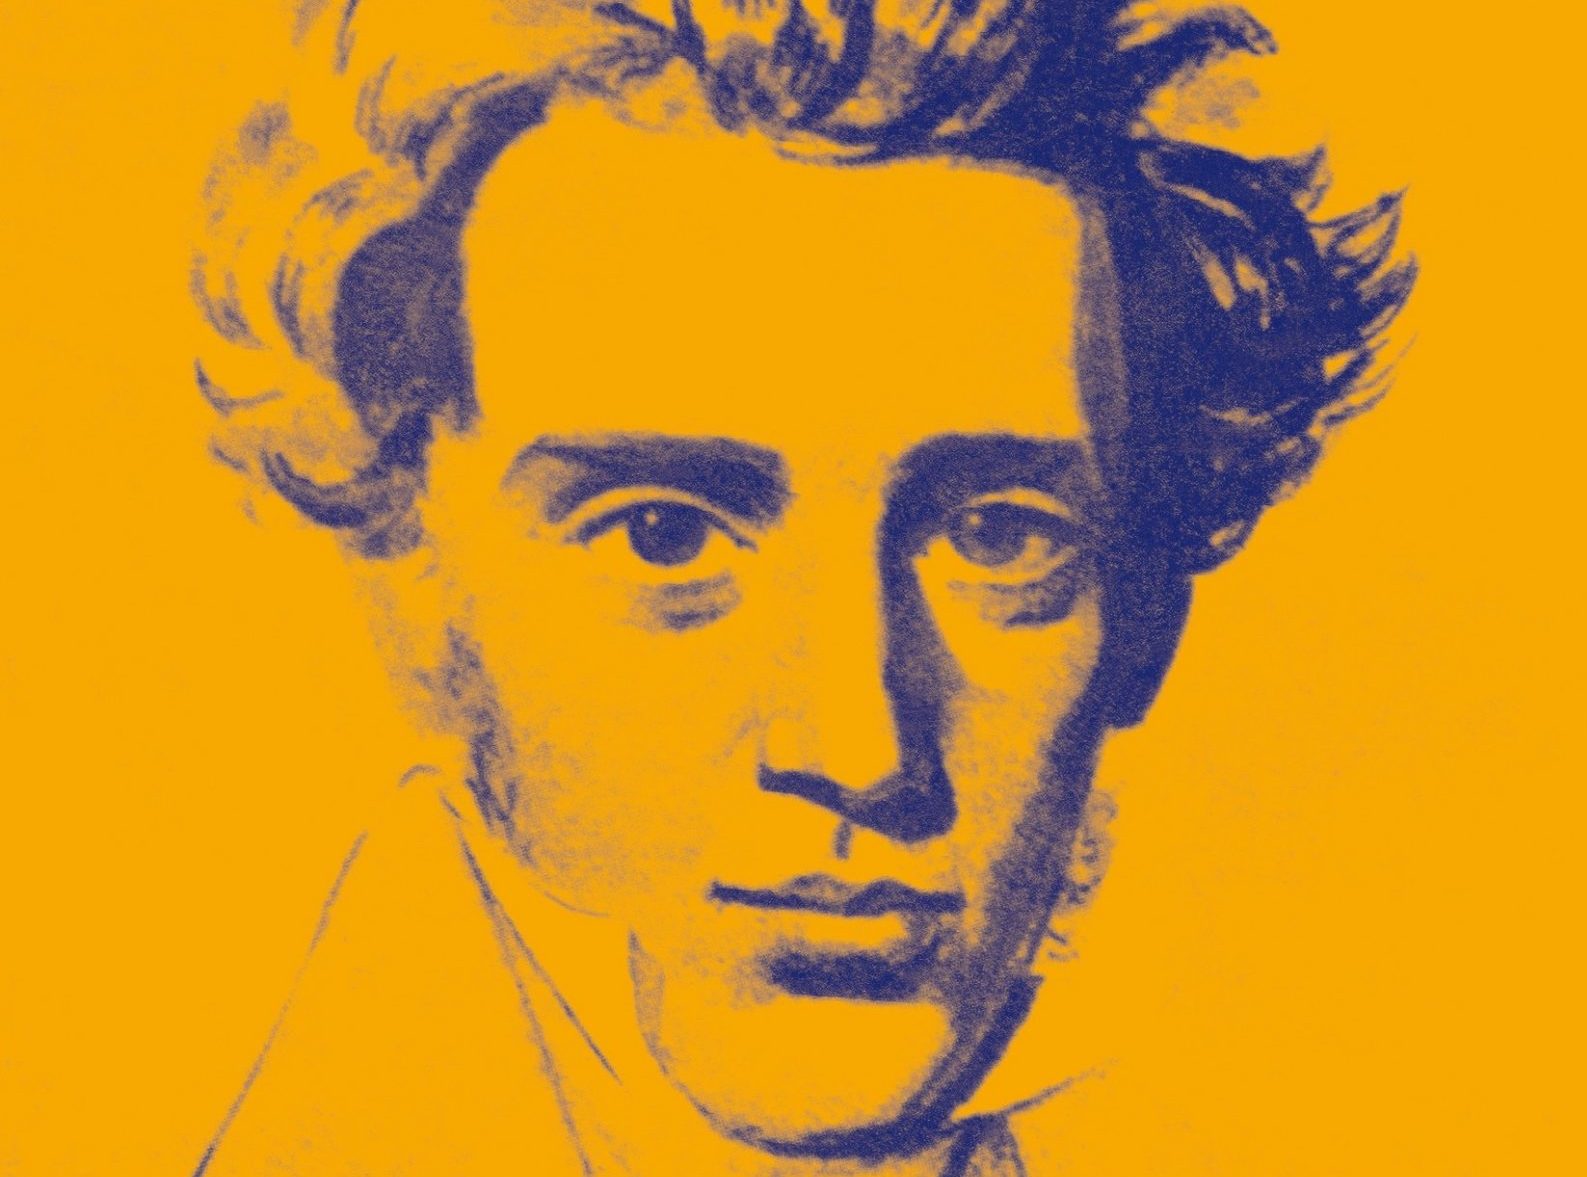 Kierkegaard barbe et cheveux mi-long dessiné en bleu sur fond jaune